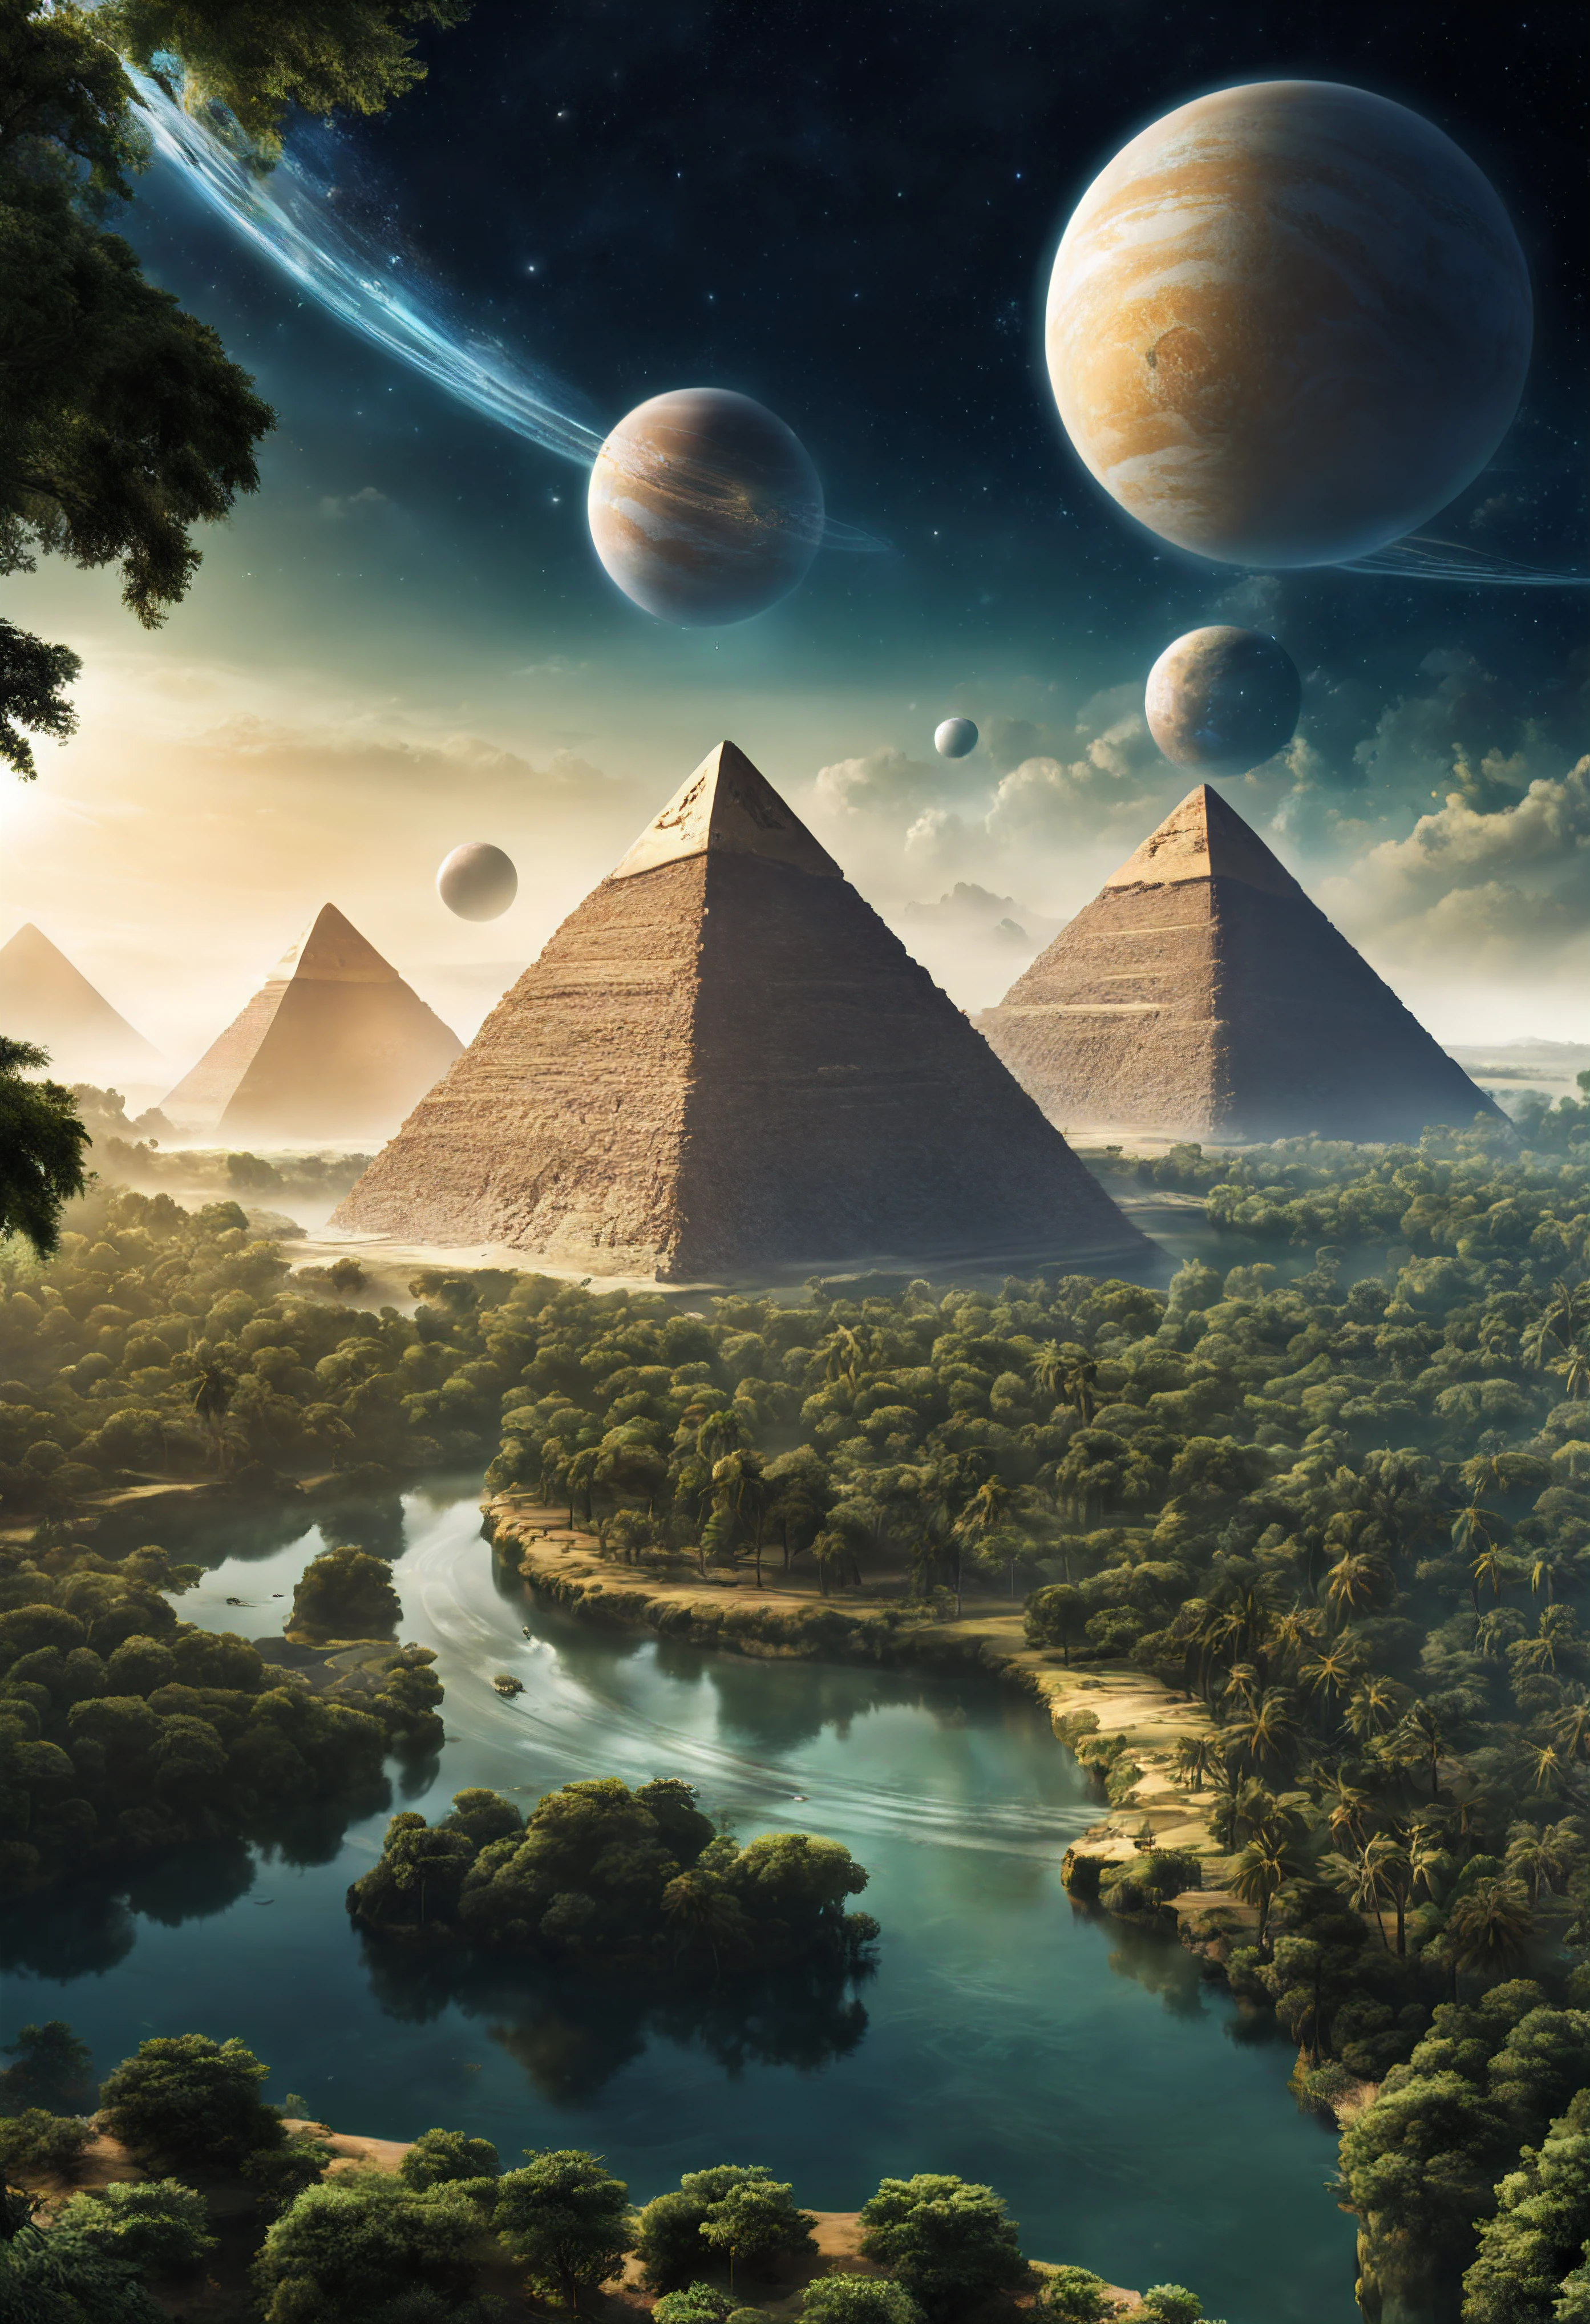 une autre planète avec des forêts et des rivières, où il y a des pyramides et des pharaons extraterrestres, vaisseaux spatiaux en forme de pyramides égyptiennes, deux planètes satellites peuvent être vues dans le ciel.